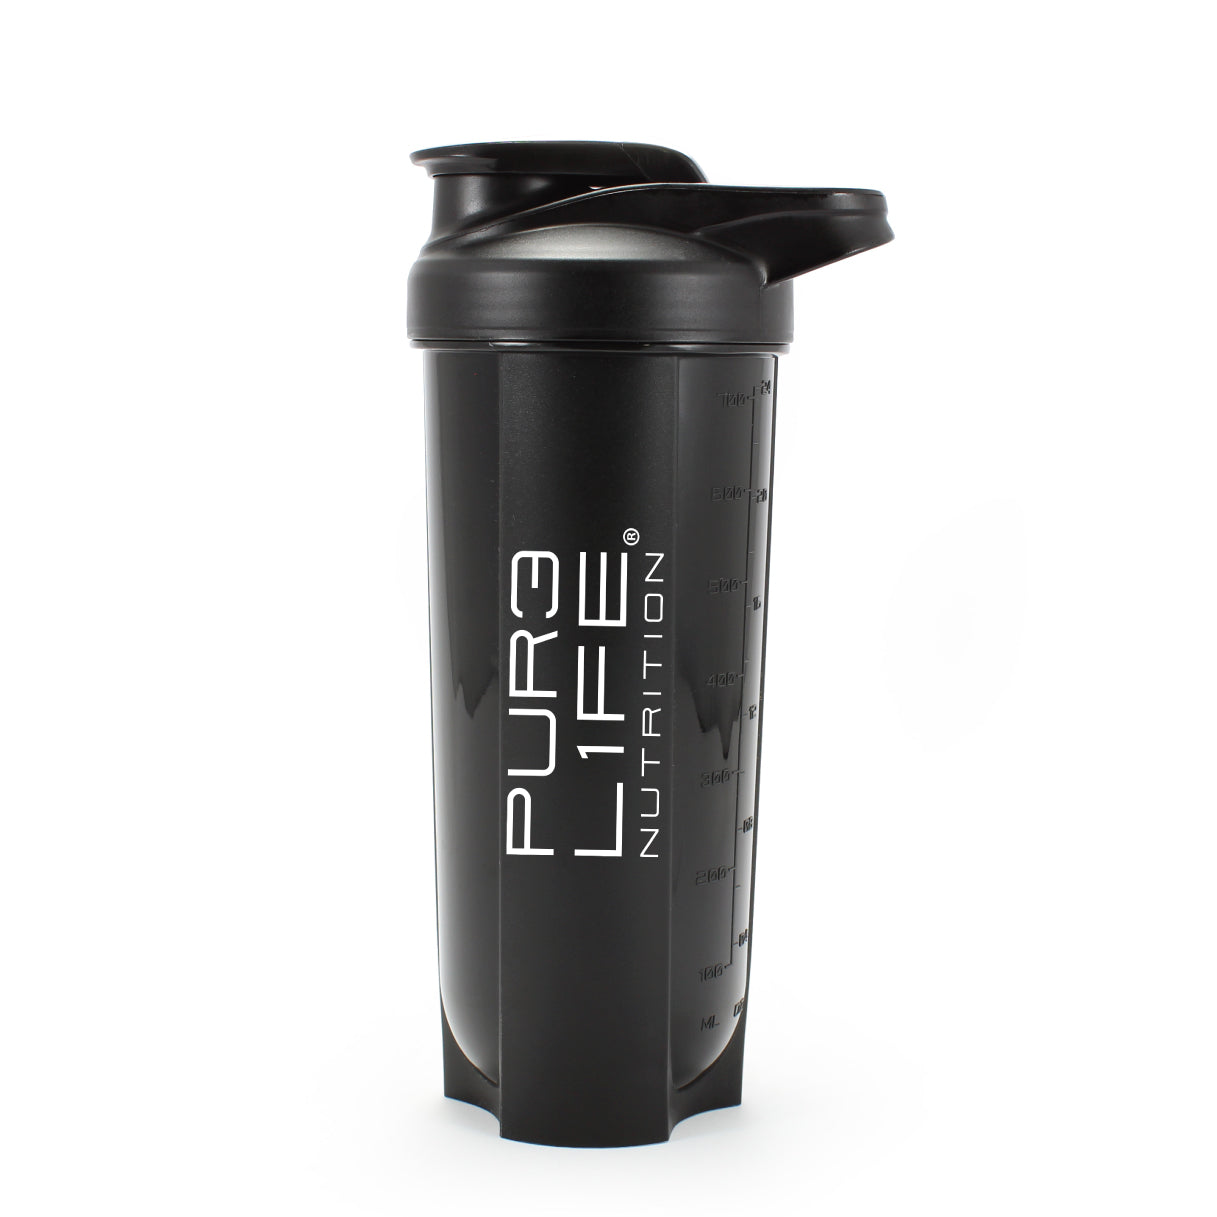 Pure Life Vaso Shaker Mezclador de Plástico Color Negro incluye 1 pieza Capacidad de 700 ml.